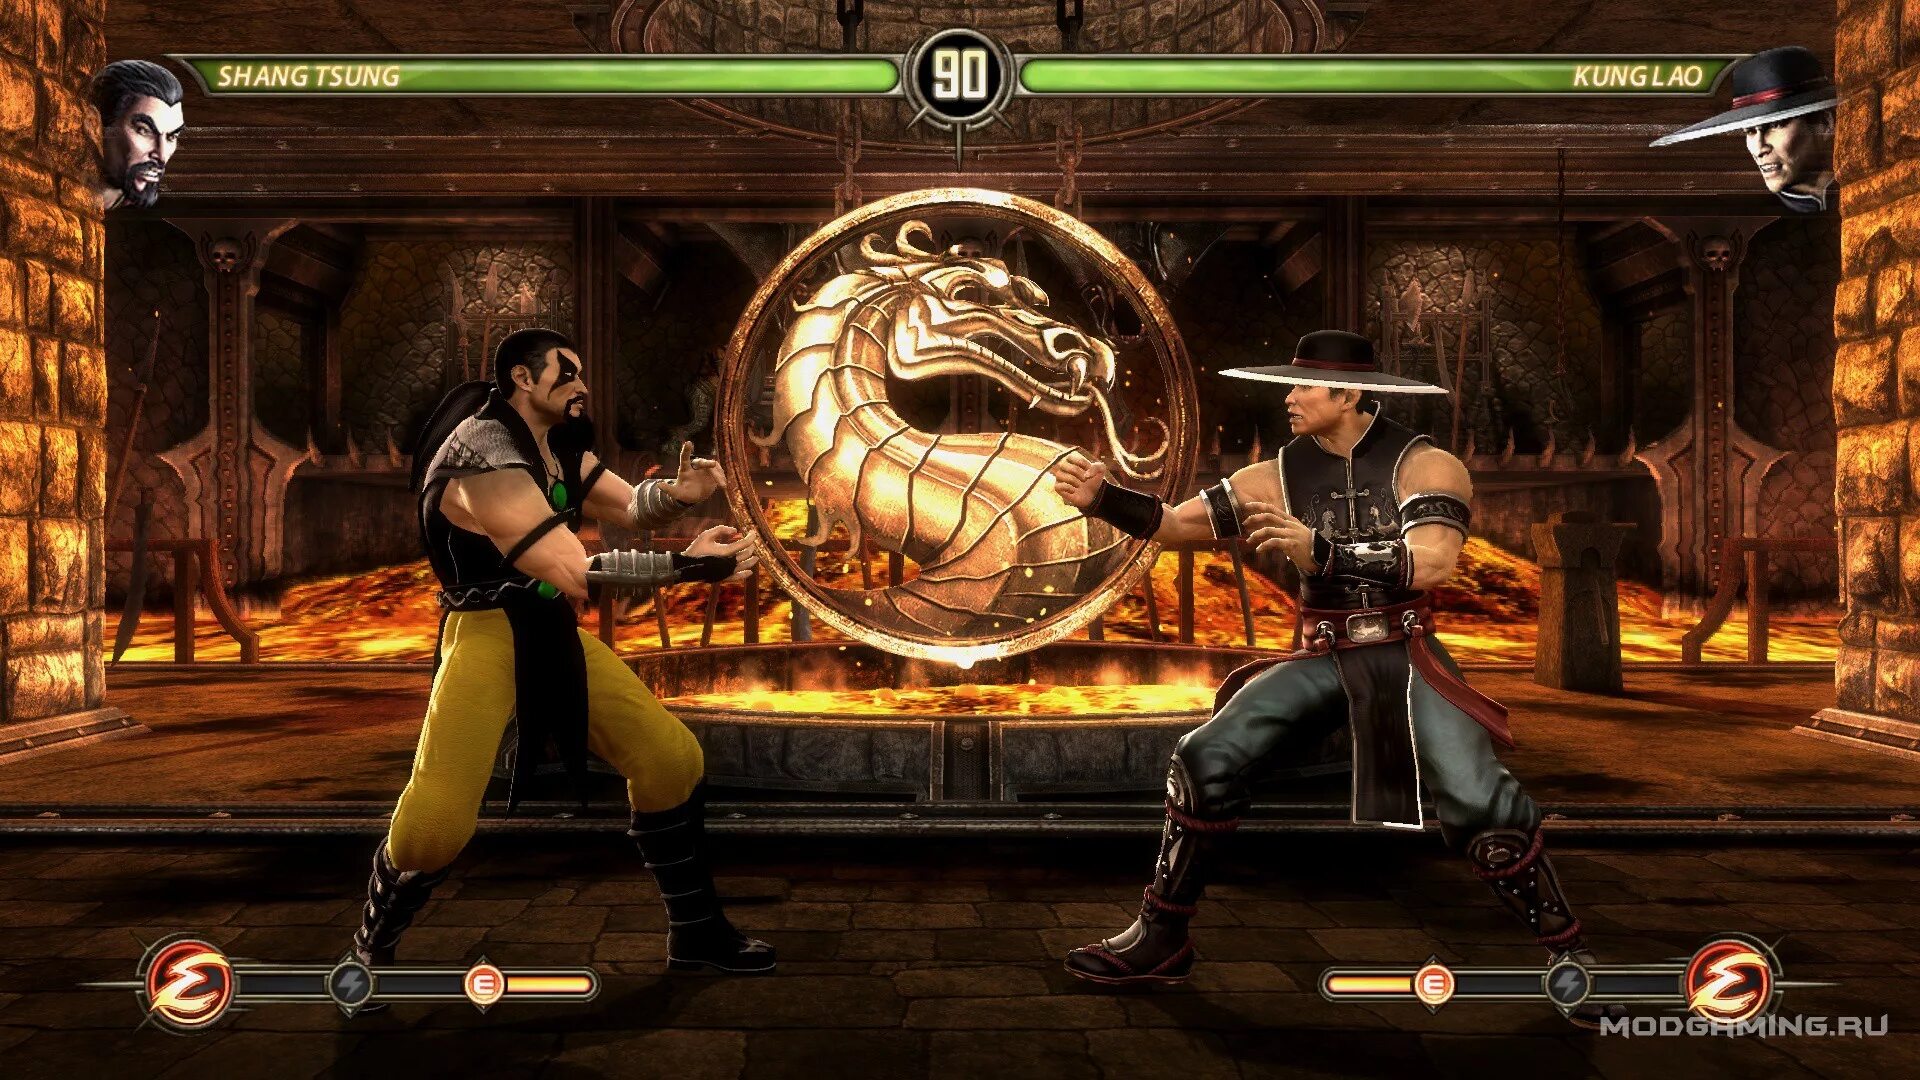 Игры мортал комбат по порядку. Шанг Цунг мортал комбат 3. Игра мортал комбат игра мортал комбат. Mortal Mortal Kombat 3 Shang Tsung. Mortal Kombat 2002.